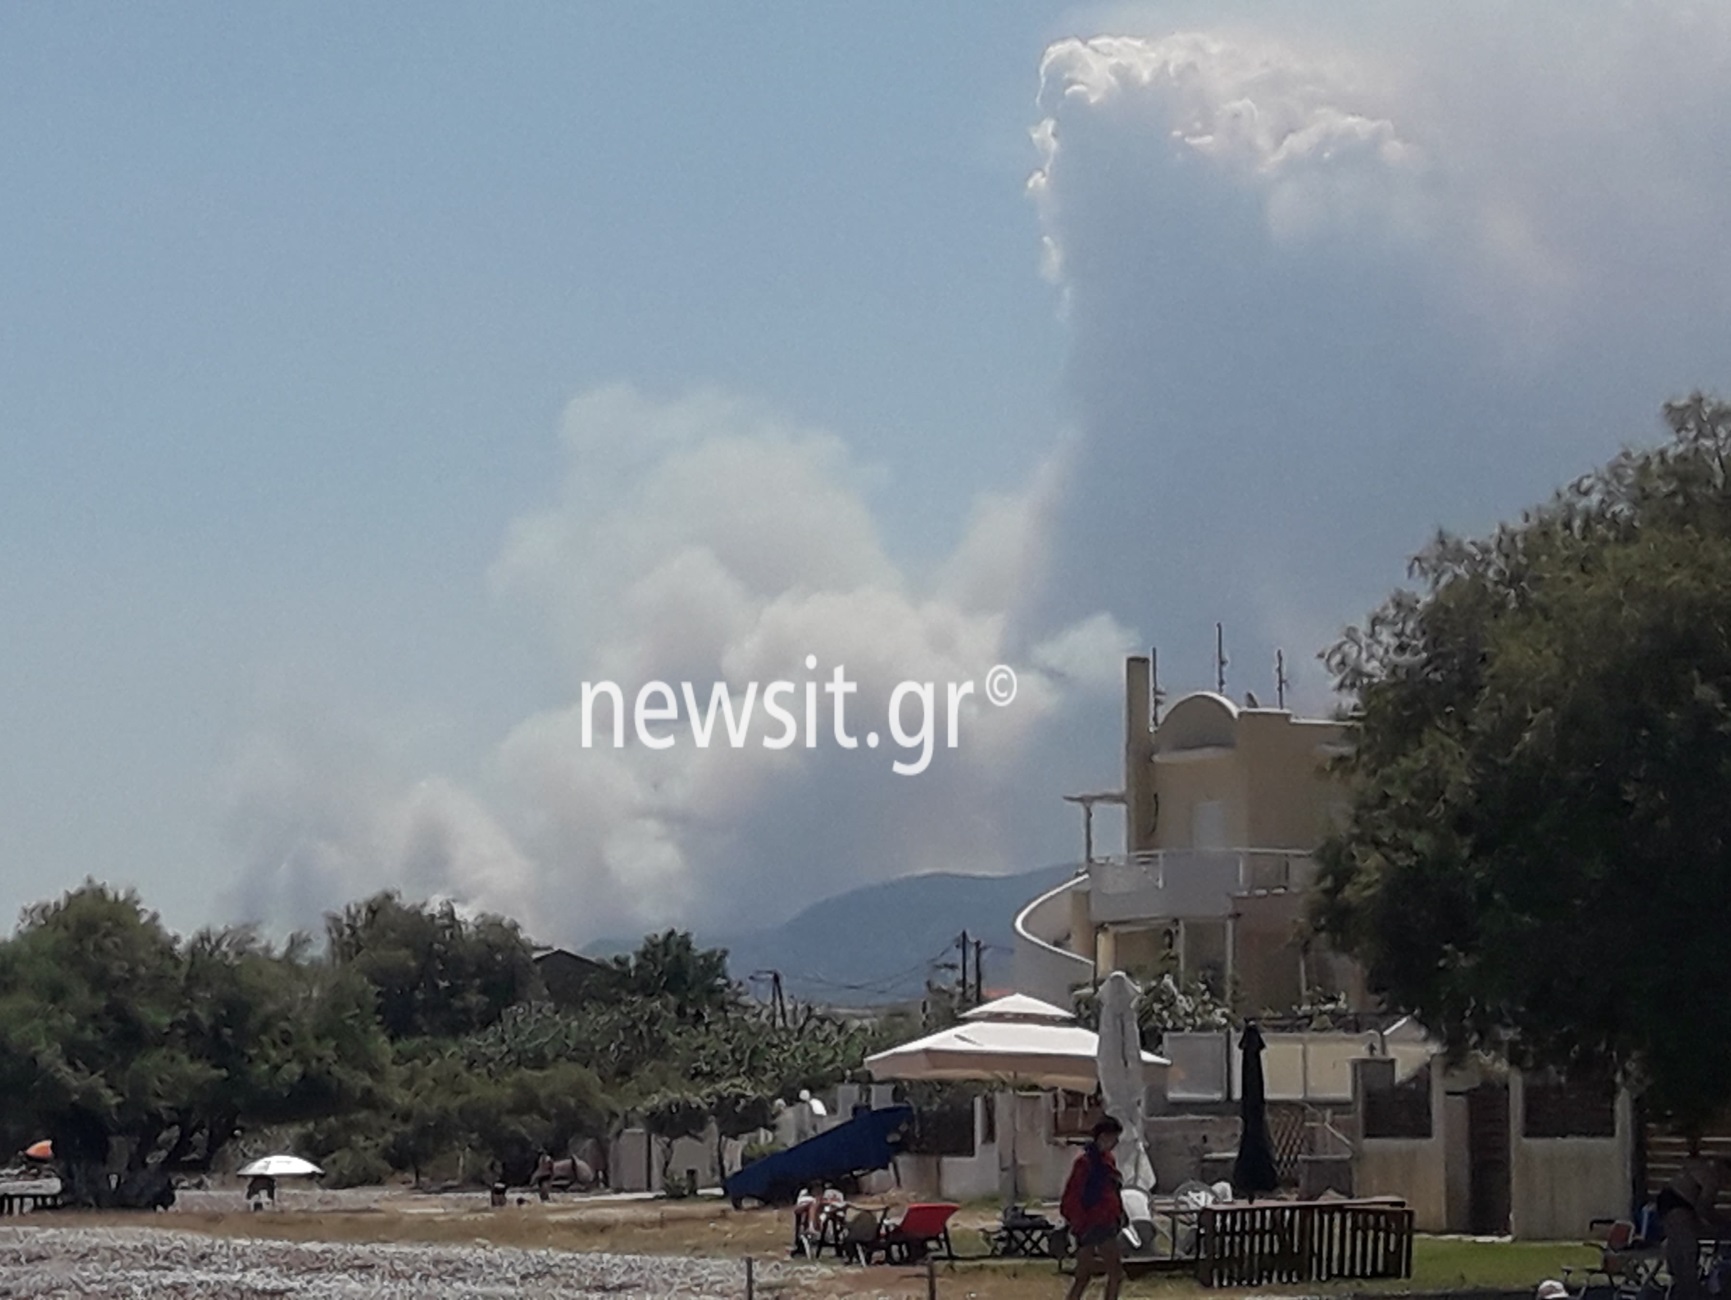 Κορινθία: Μεγάλη φωτιά κοντά σε στρατόπεδο στις Κεχριές! Πληροφορίες για εκκενώσεις οικισμών και μίας κατασκήνωσης